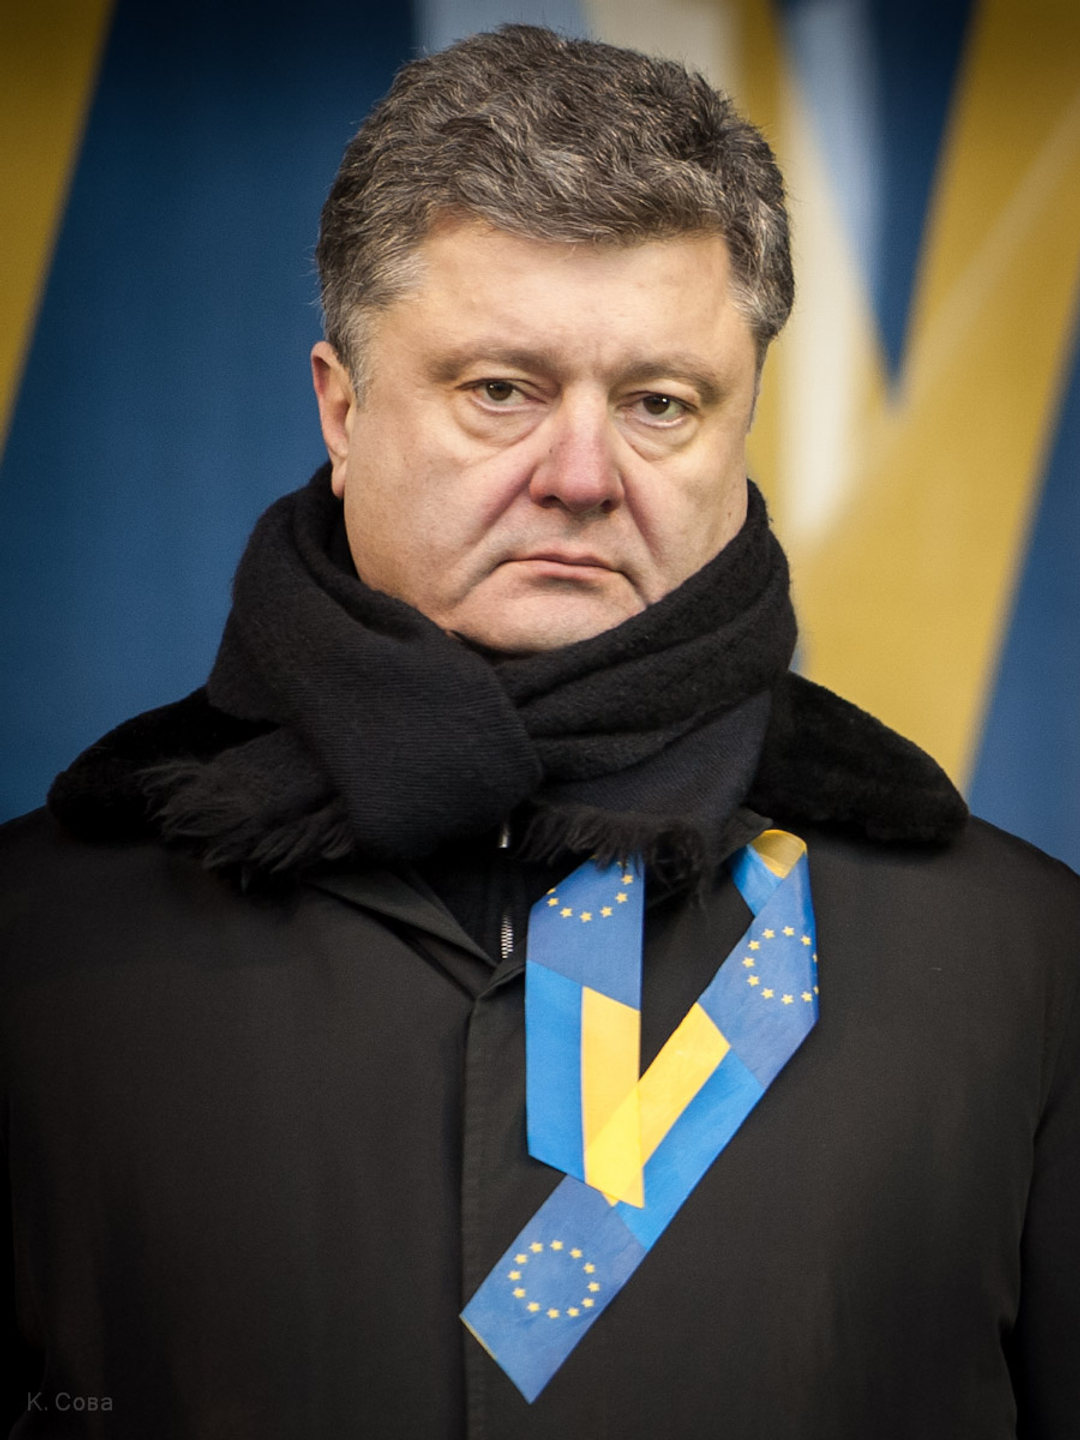 Petro Poroshenko young age